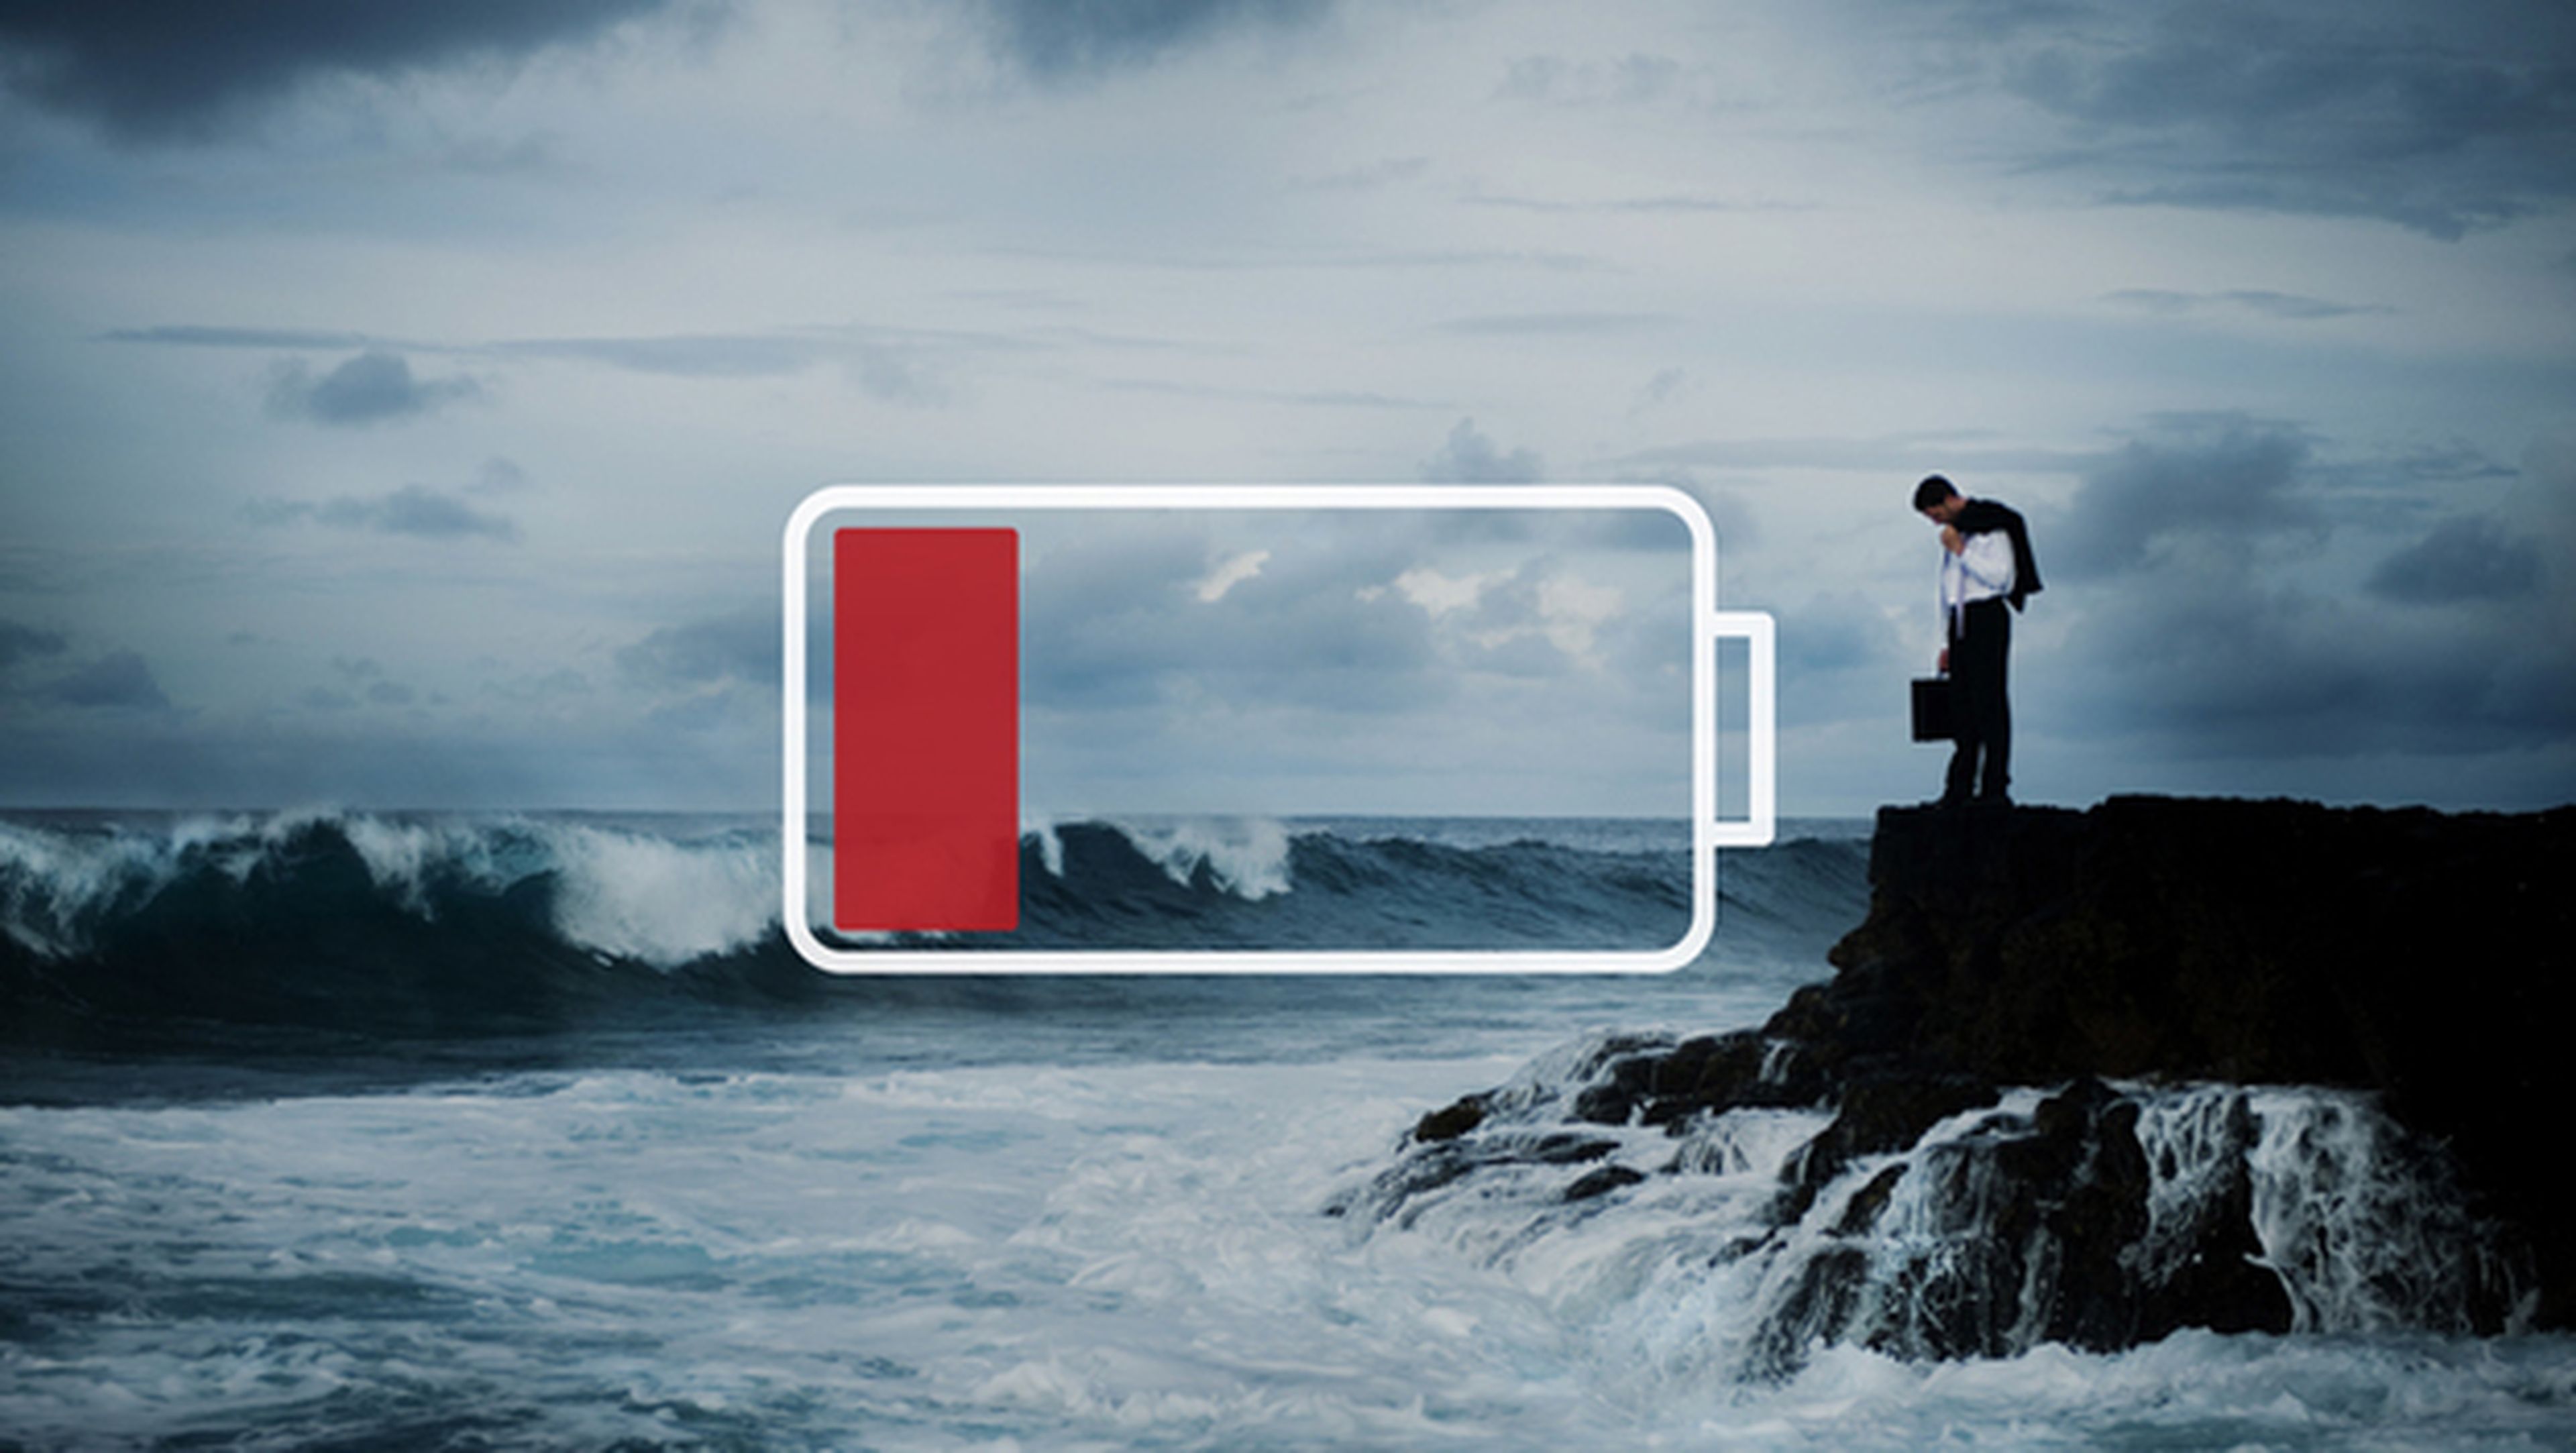 Resolución 4K en tu smartphone sin agotar la batería